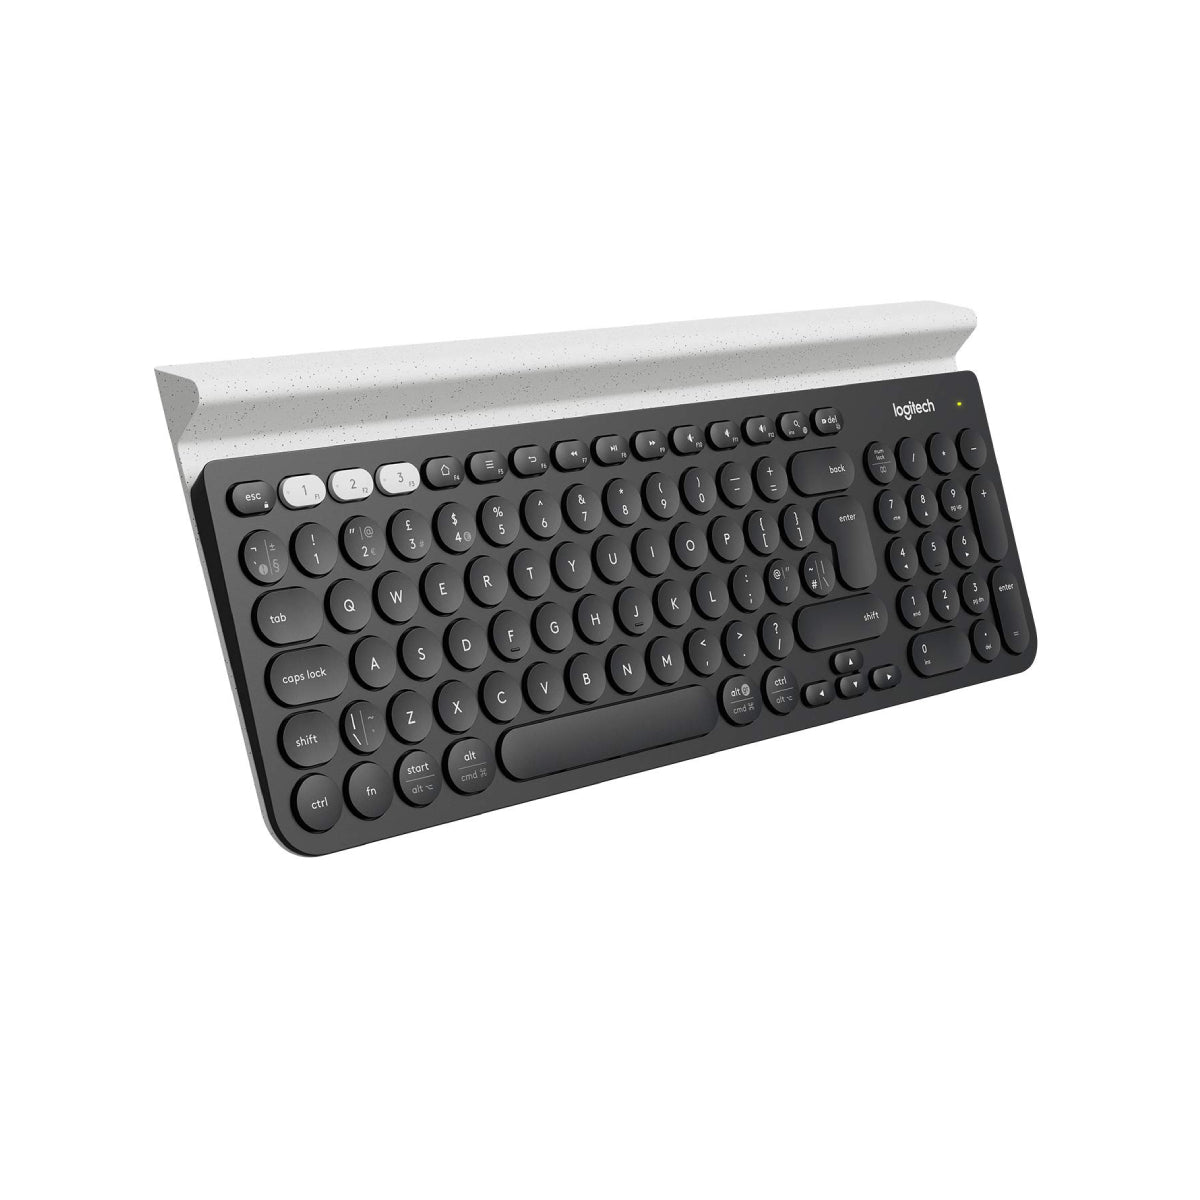 Logitech K780 Multi-Device Wireless Keyboard - لوحة مفاتيح - Store 974 | ستور ٩٧٤